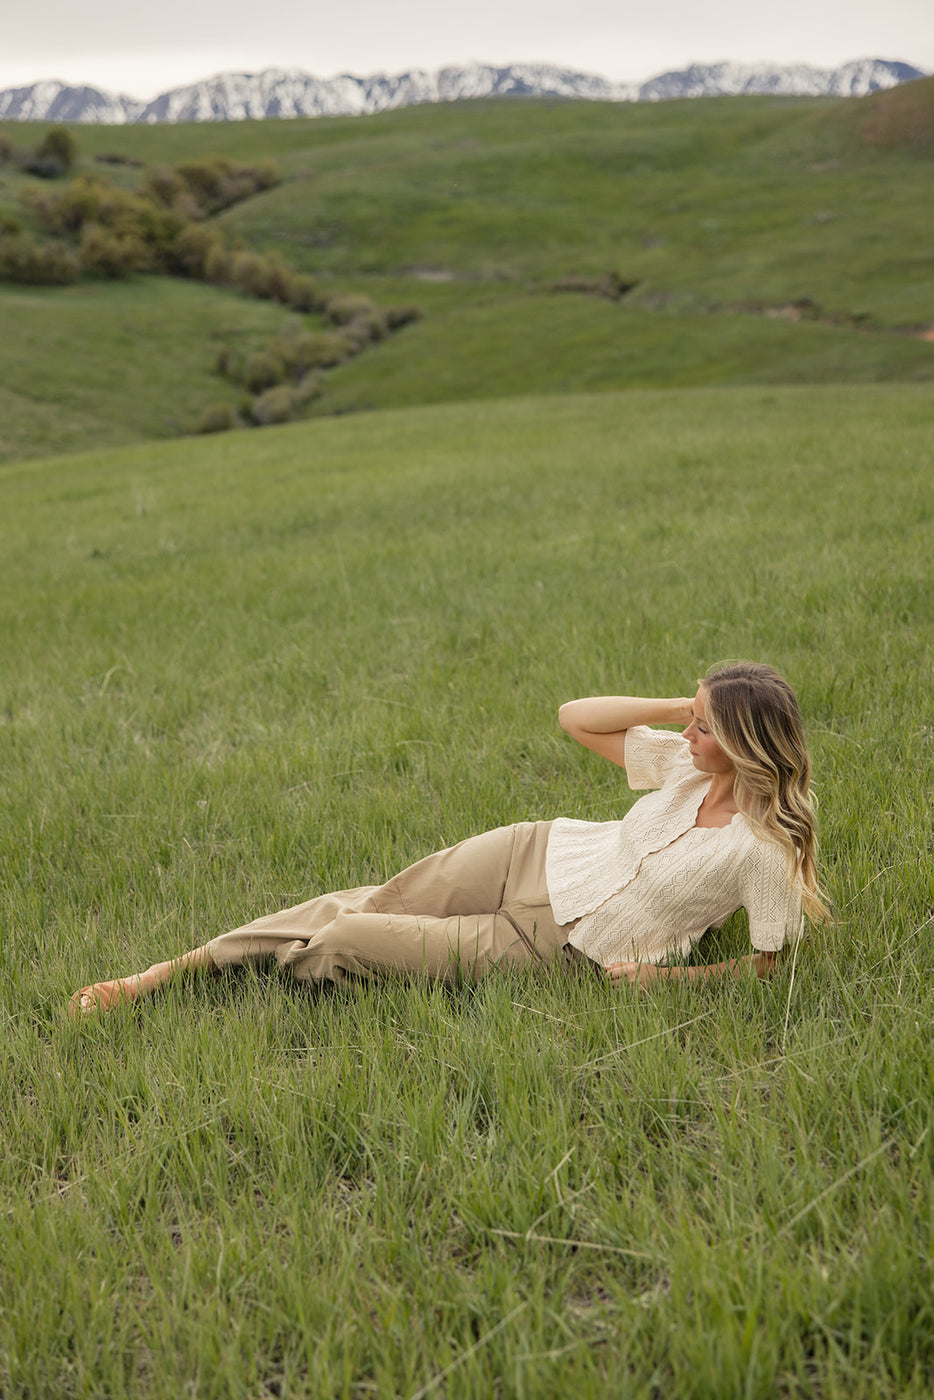 a woman lying in a grassy field